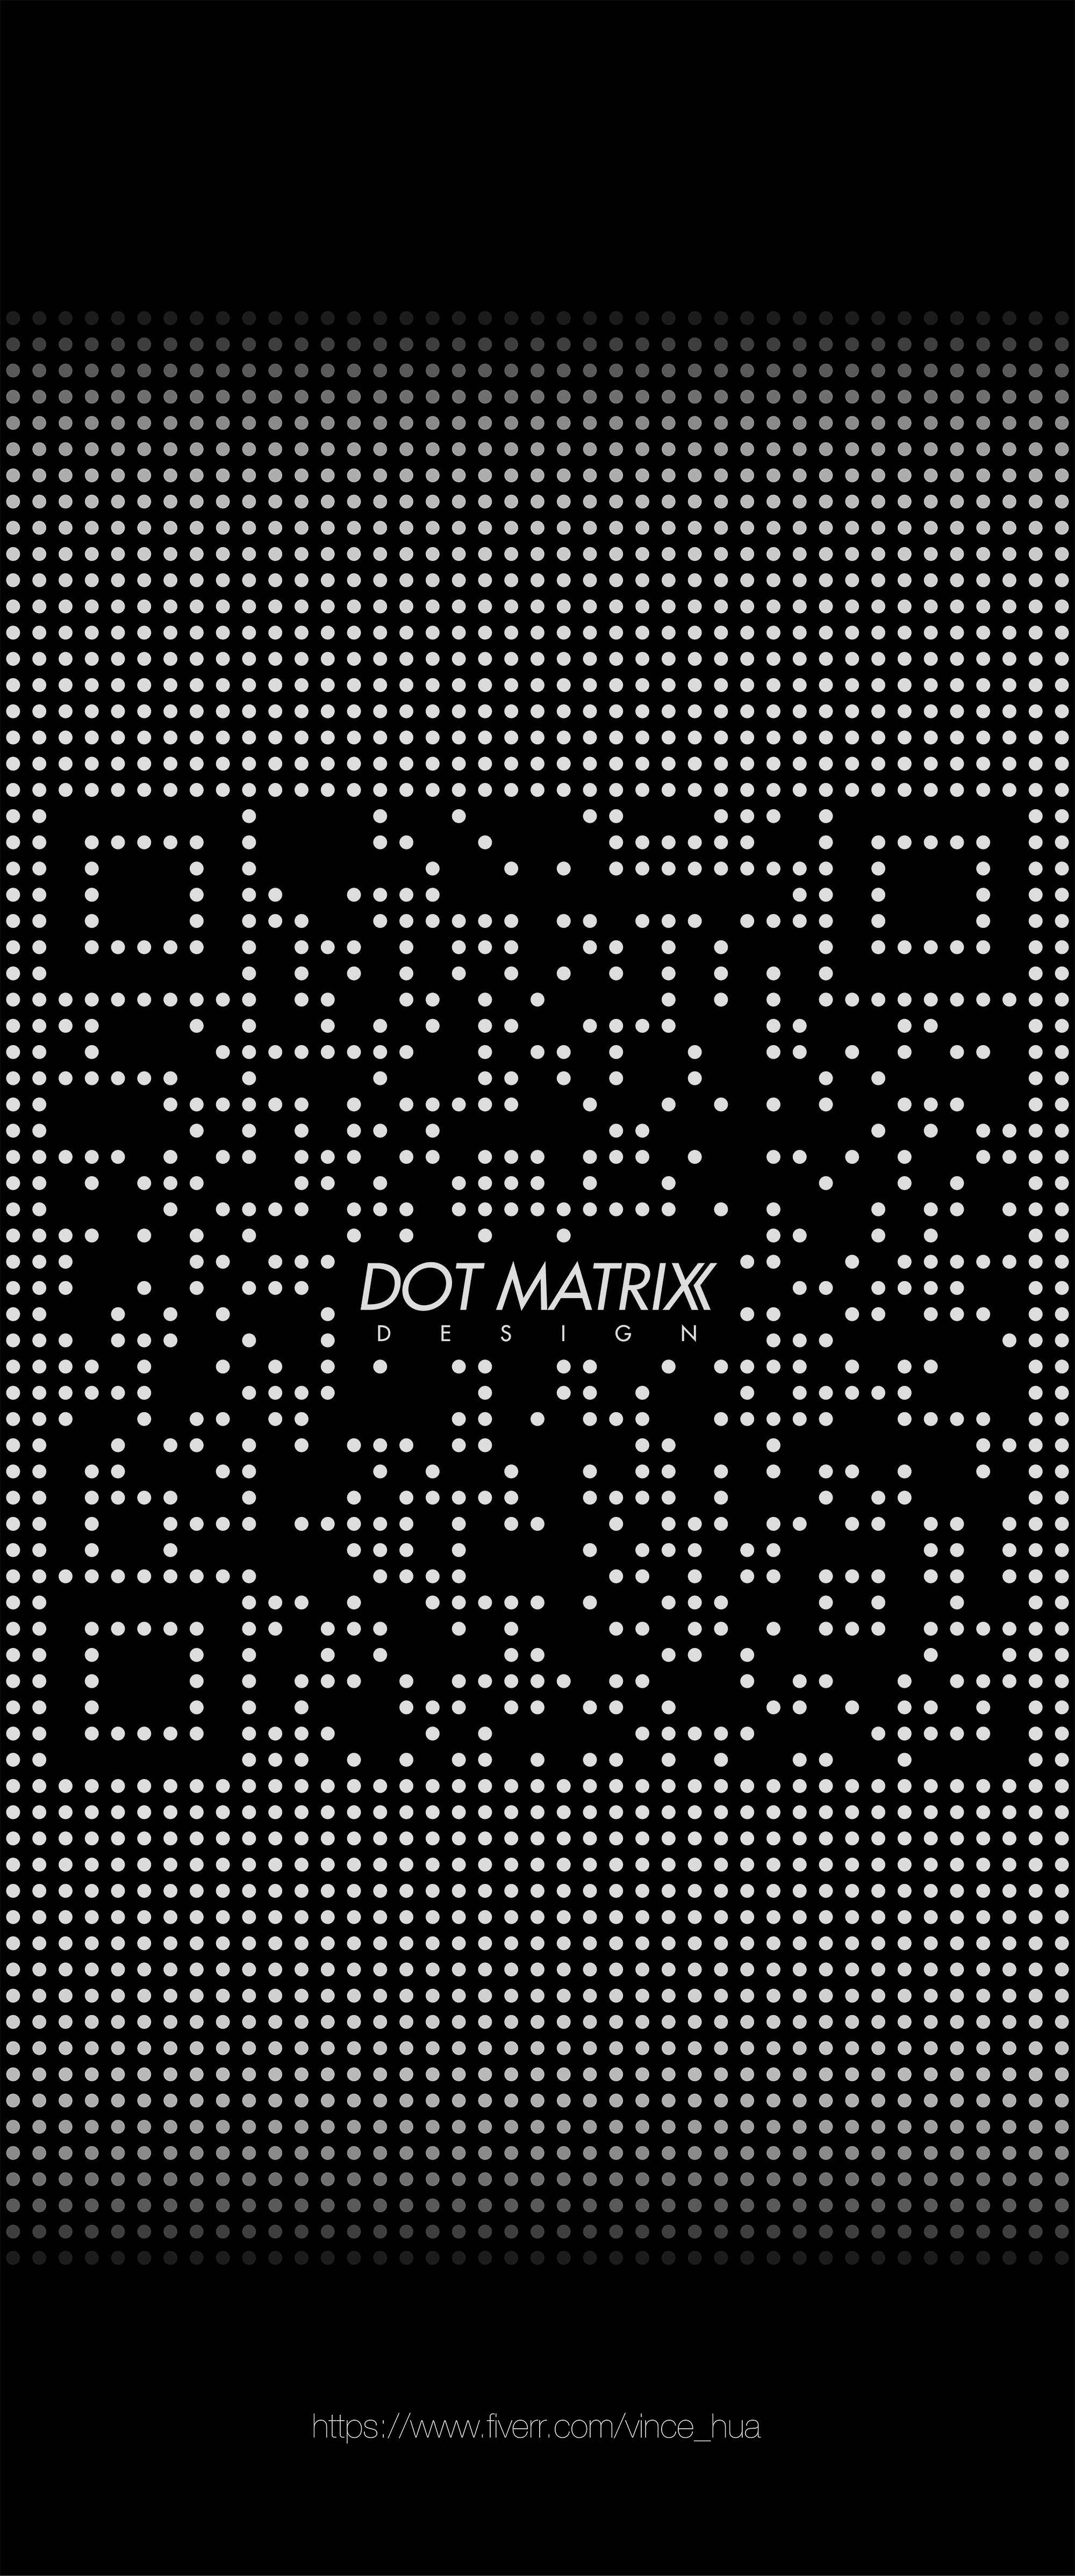 Dot matrix qr code wallpaper design for android and ios coding code wallpaper qr code